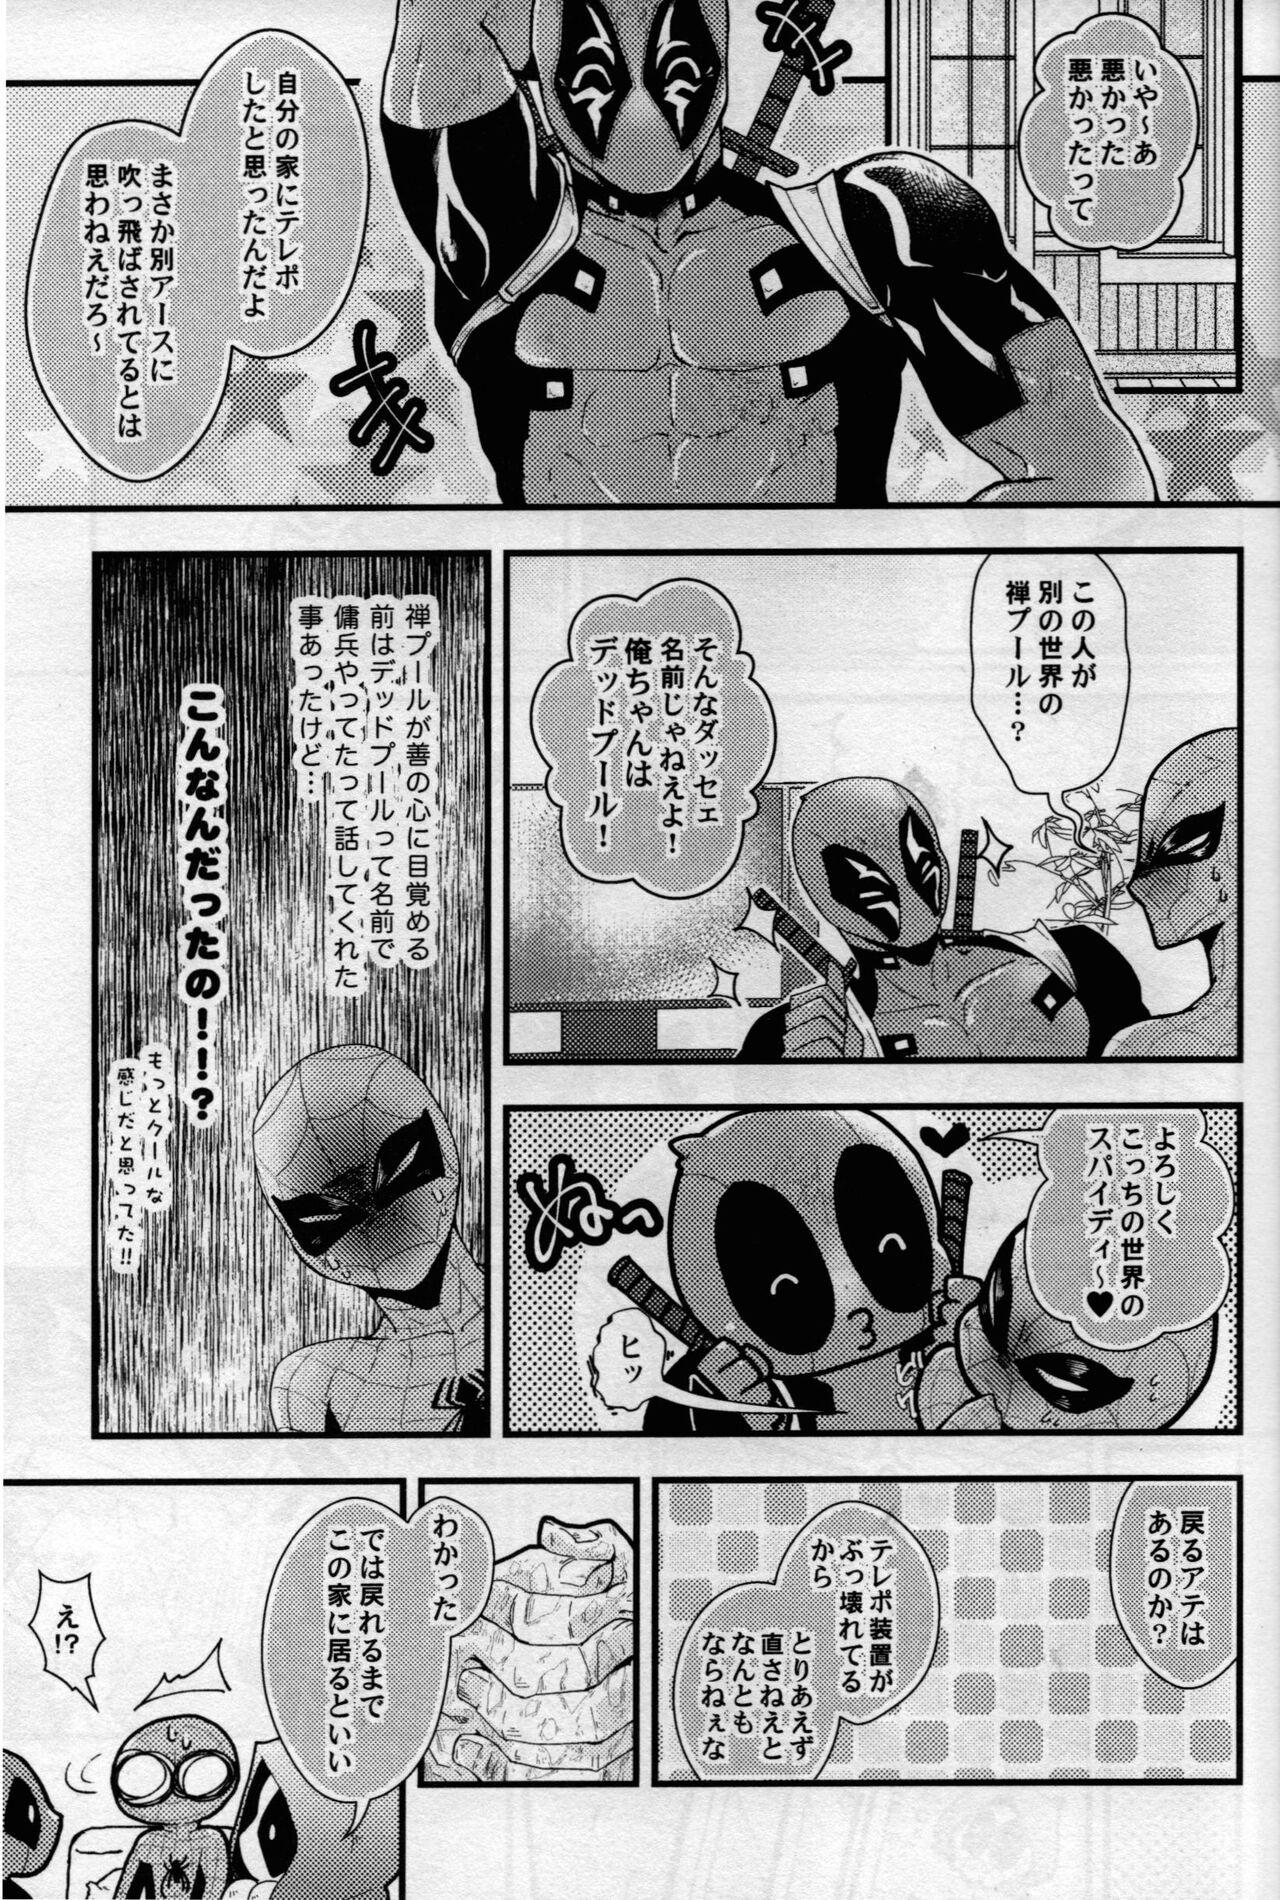 Rimming maruchiba → suraba → zu maruchibasurabazu - Spider-man Hot Brunette - Page 6